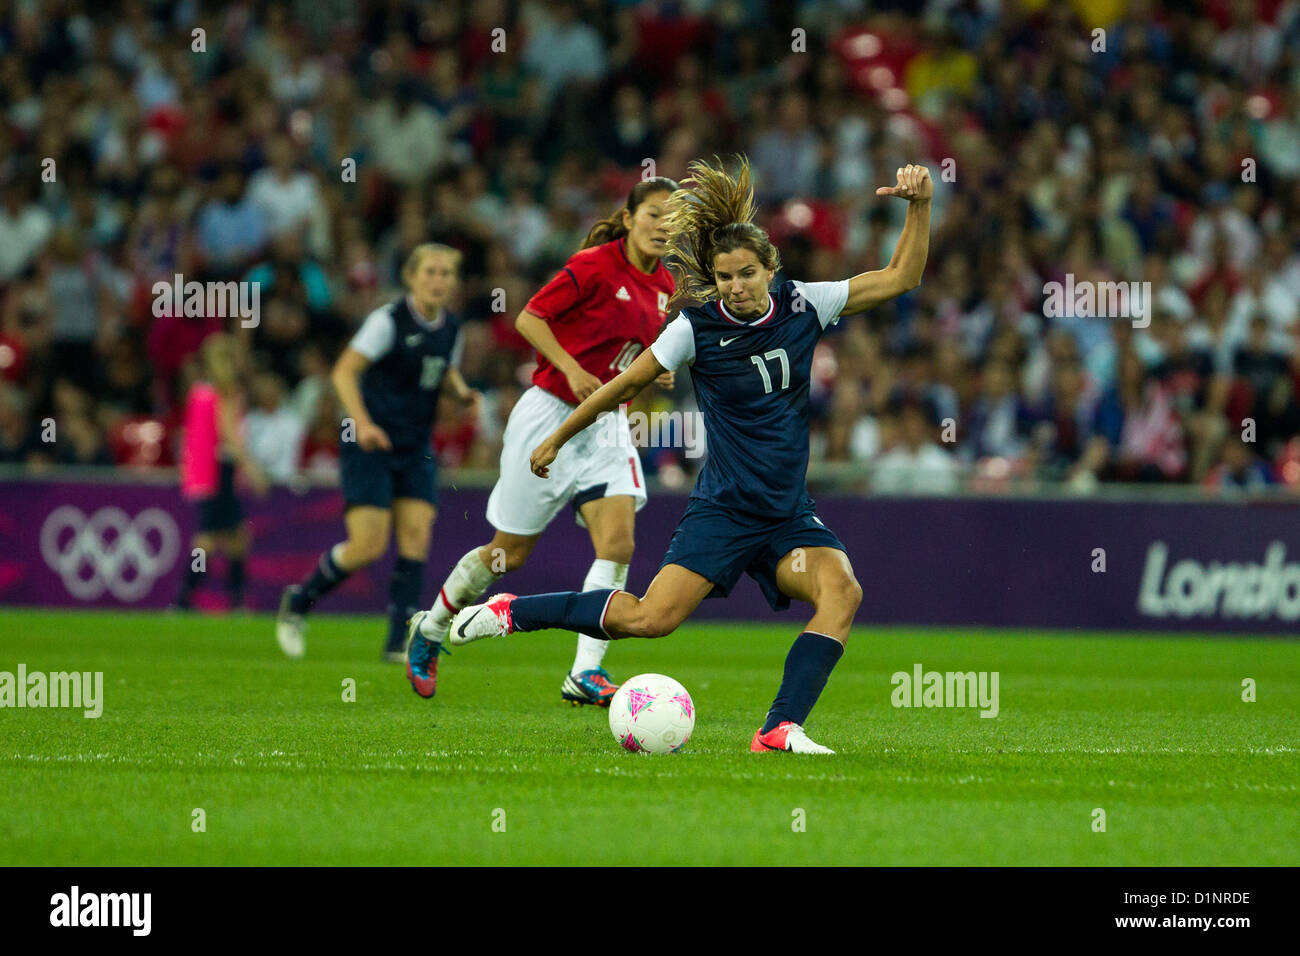 Tobin Heath (USA)-17-USA remporte l'or sur le Japon en femmes Football (soccer) aux Jeux Olympiques d'été, Londres 2012 Banque D'Images